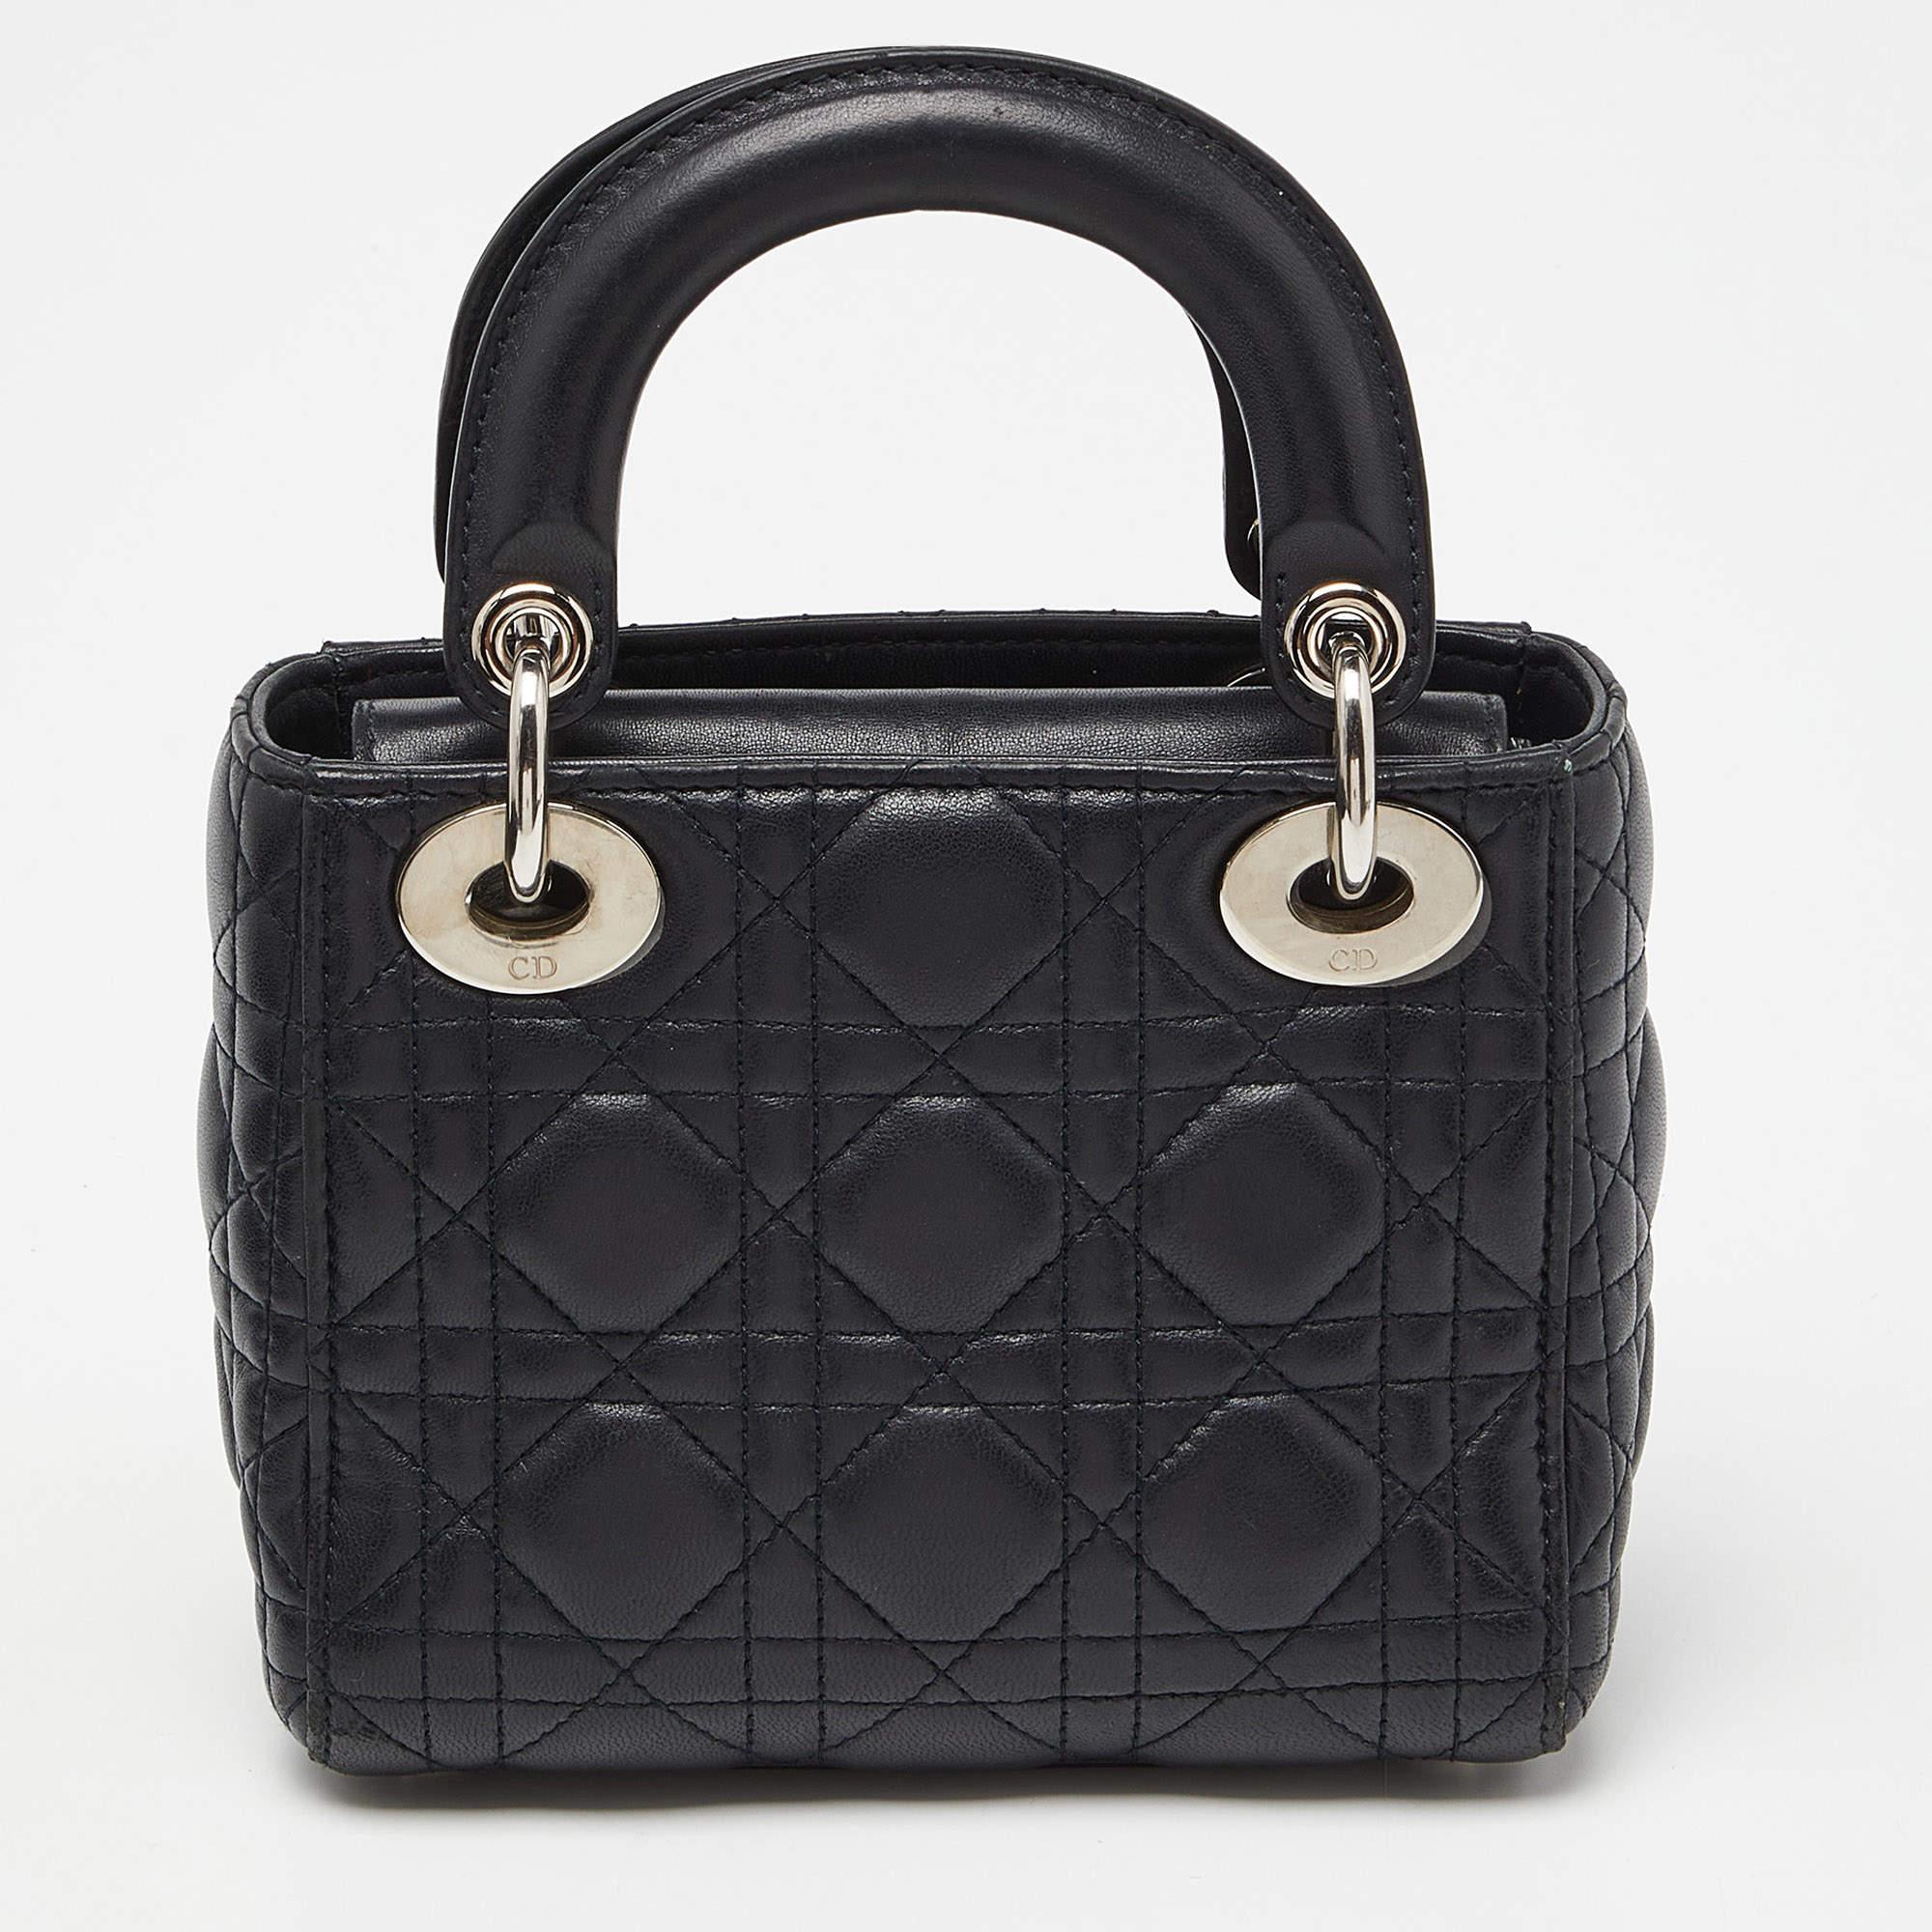 Ein zeitloser Status und ein großartiges Design kennzeichnen die Lady Dior-Tasche. Es ist eine ikonische Tasche, in die die Menschen bis heute investieren. Wir haben hier diese klassische Schönheit aus Cannage-Leder. Diese Mini-Lady Dior ist mit